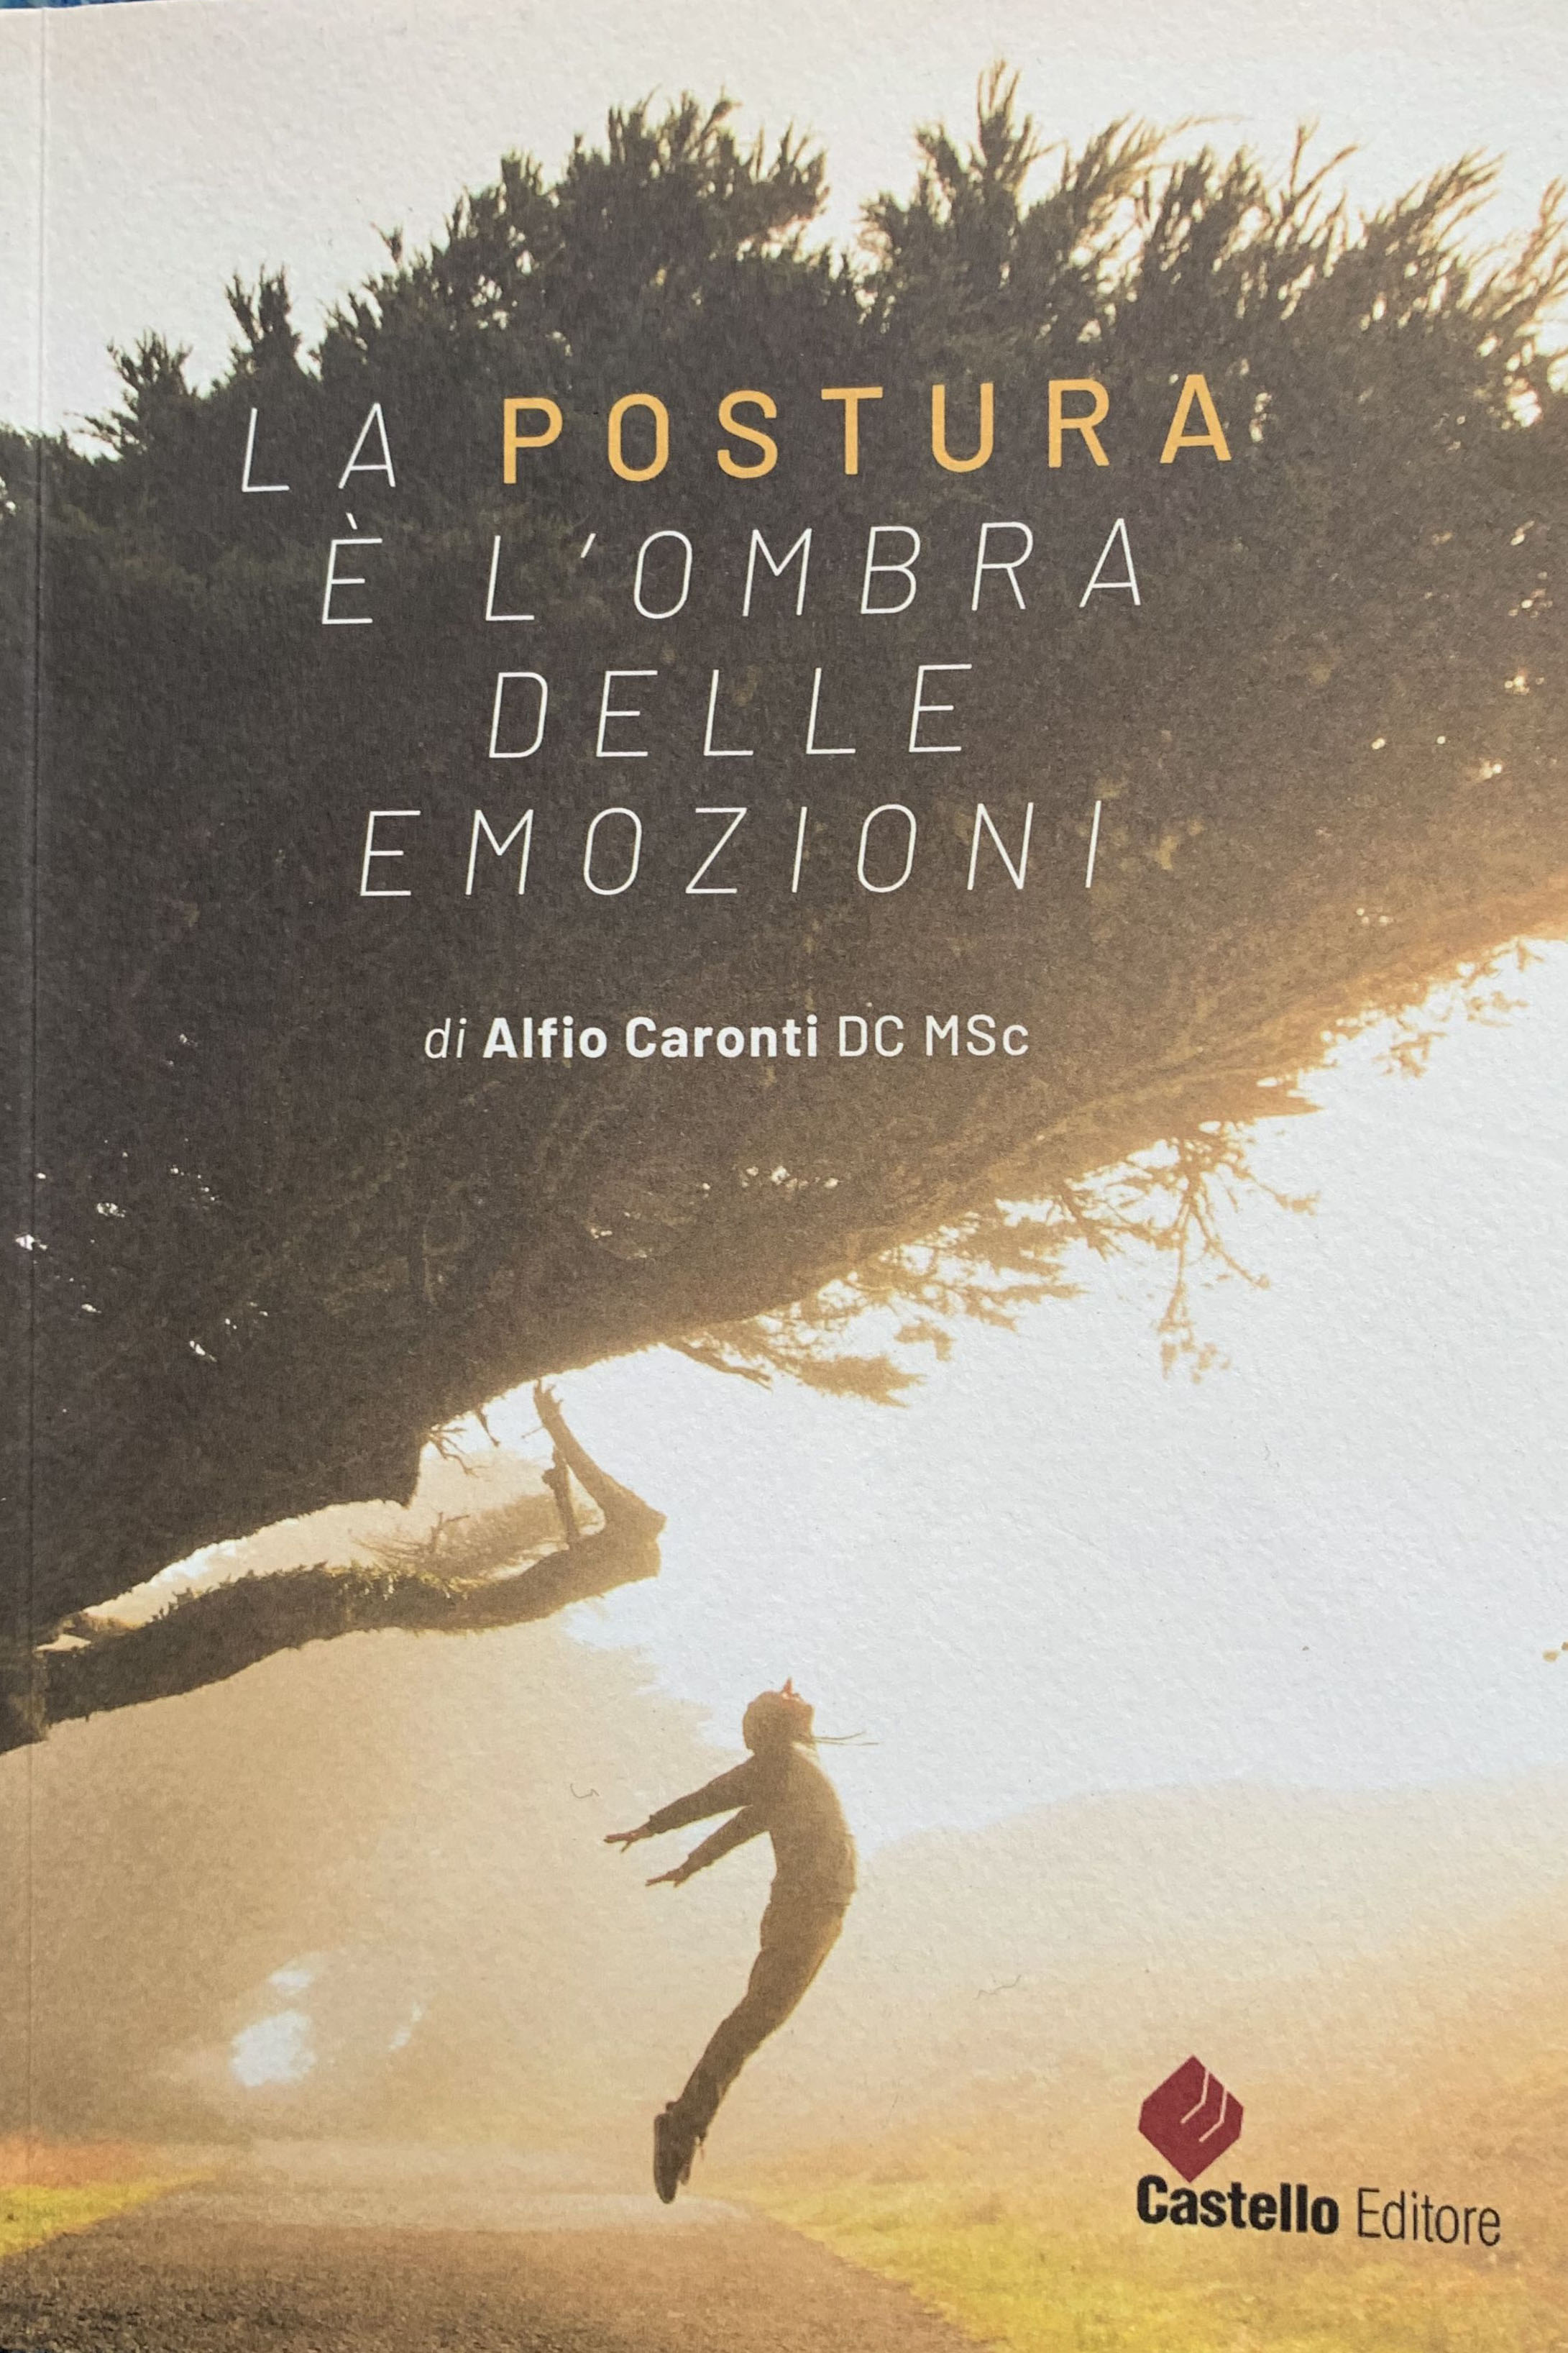 'La postura è l'ombra delle emozioni', libro del famoso chiropratico Alfio Caronti